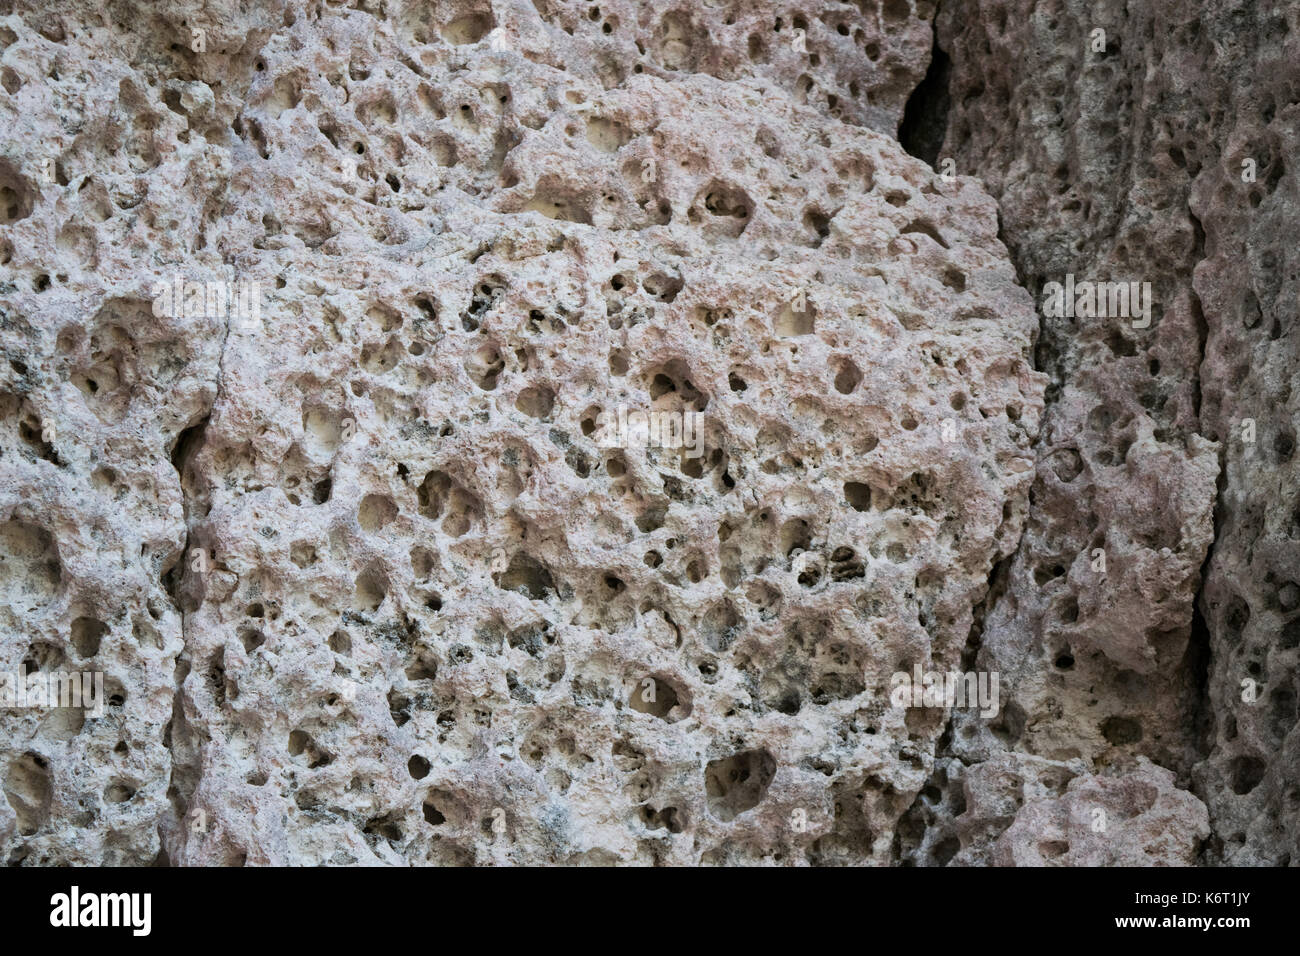 Rosa chiaro o rosato di roccia calcarea che si trova lungo le scogliere del sud-ovest di Malta. Le rocce sono piene di buchi erosione e dagli agenti atmosferici. Rdum tal-Mara Malta Foto Stock